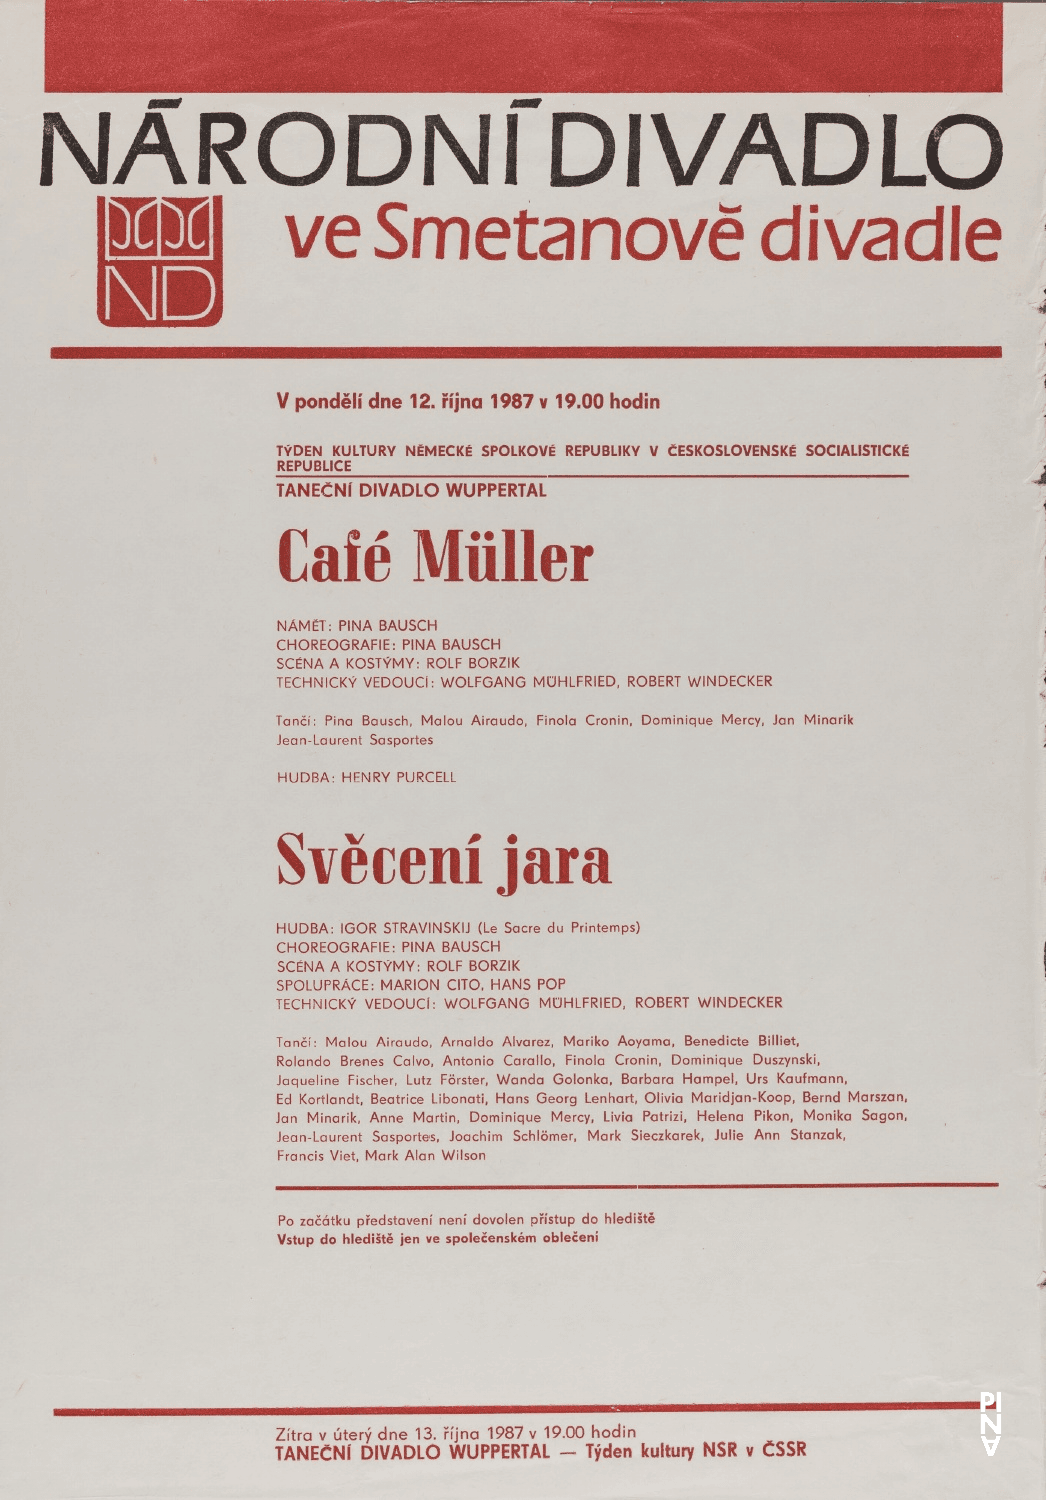 Programme pour « Café Müller » et « Le Sacre du printemps » de Pina Bausch avec Tanztheater Wuppertal à Prague, 12 oct. 1987 – 13 oct. 1987